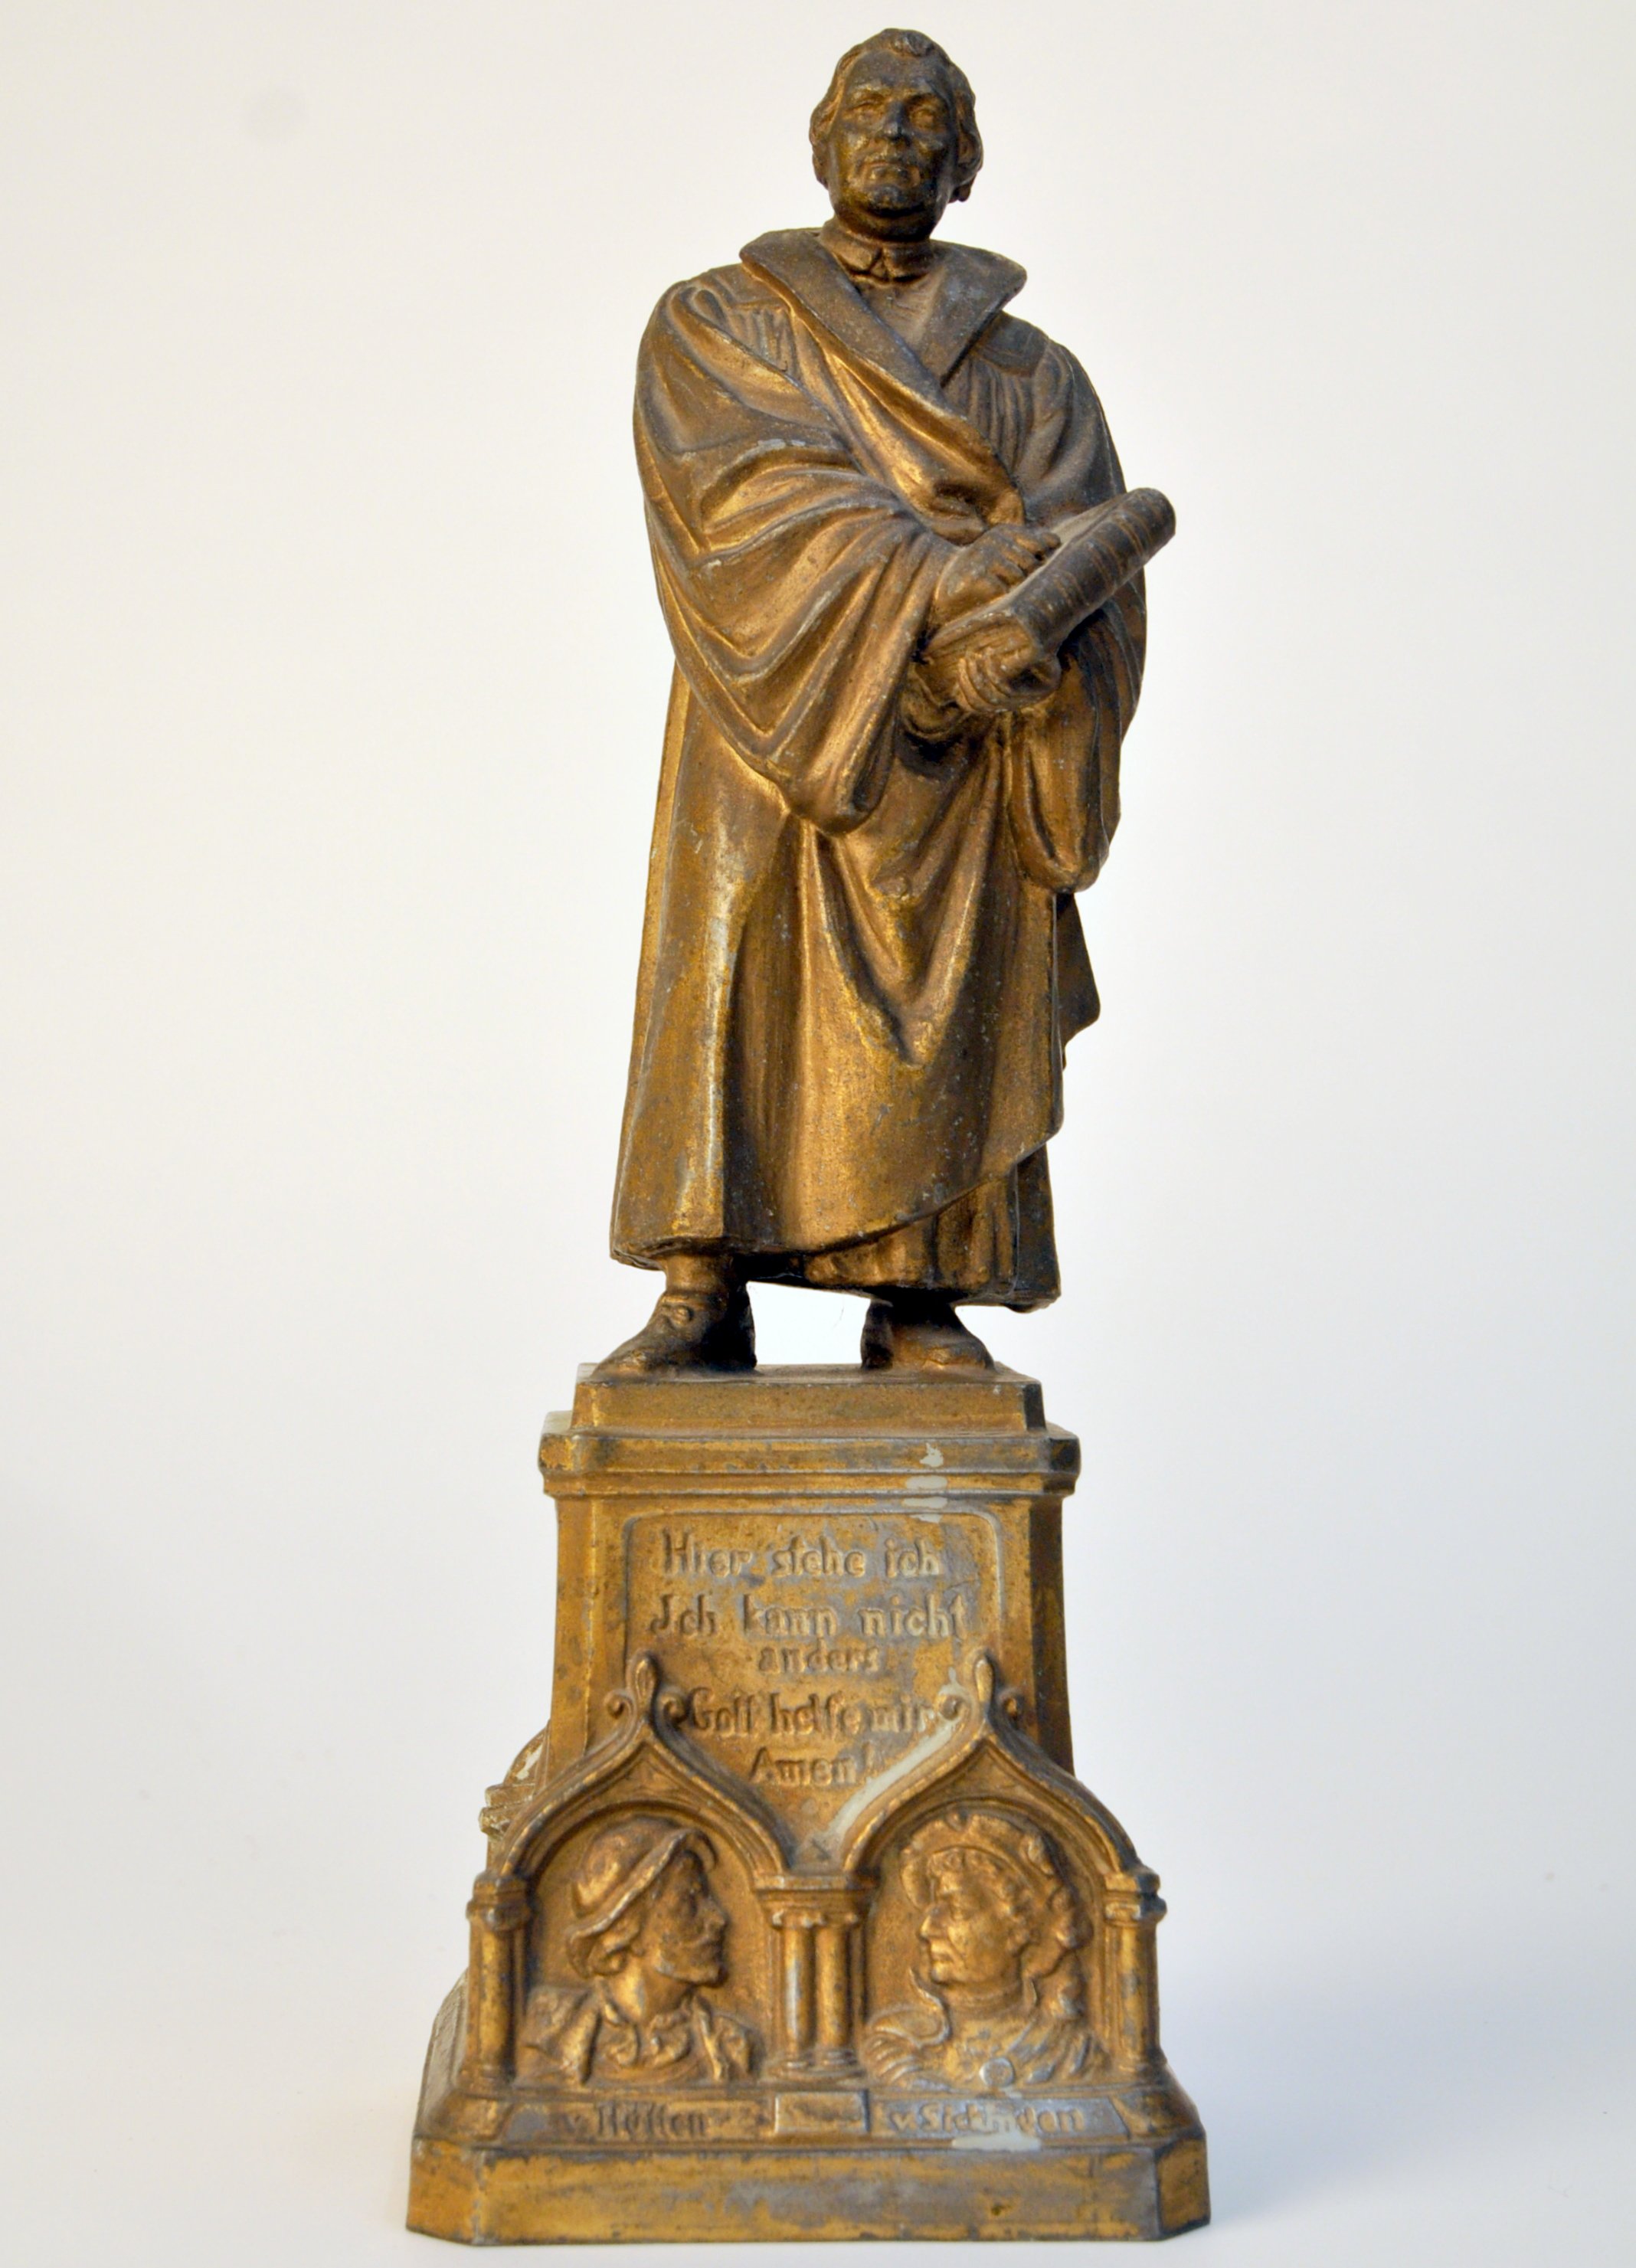 Luther-Statuette mit eingebauter Spieluhr (Historisches Museum der Pfalz, Speyer CC BY)